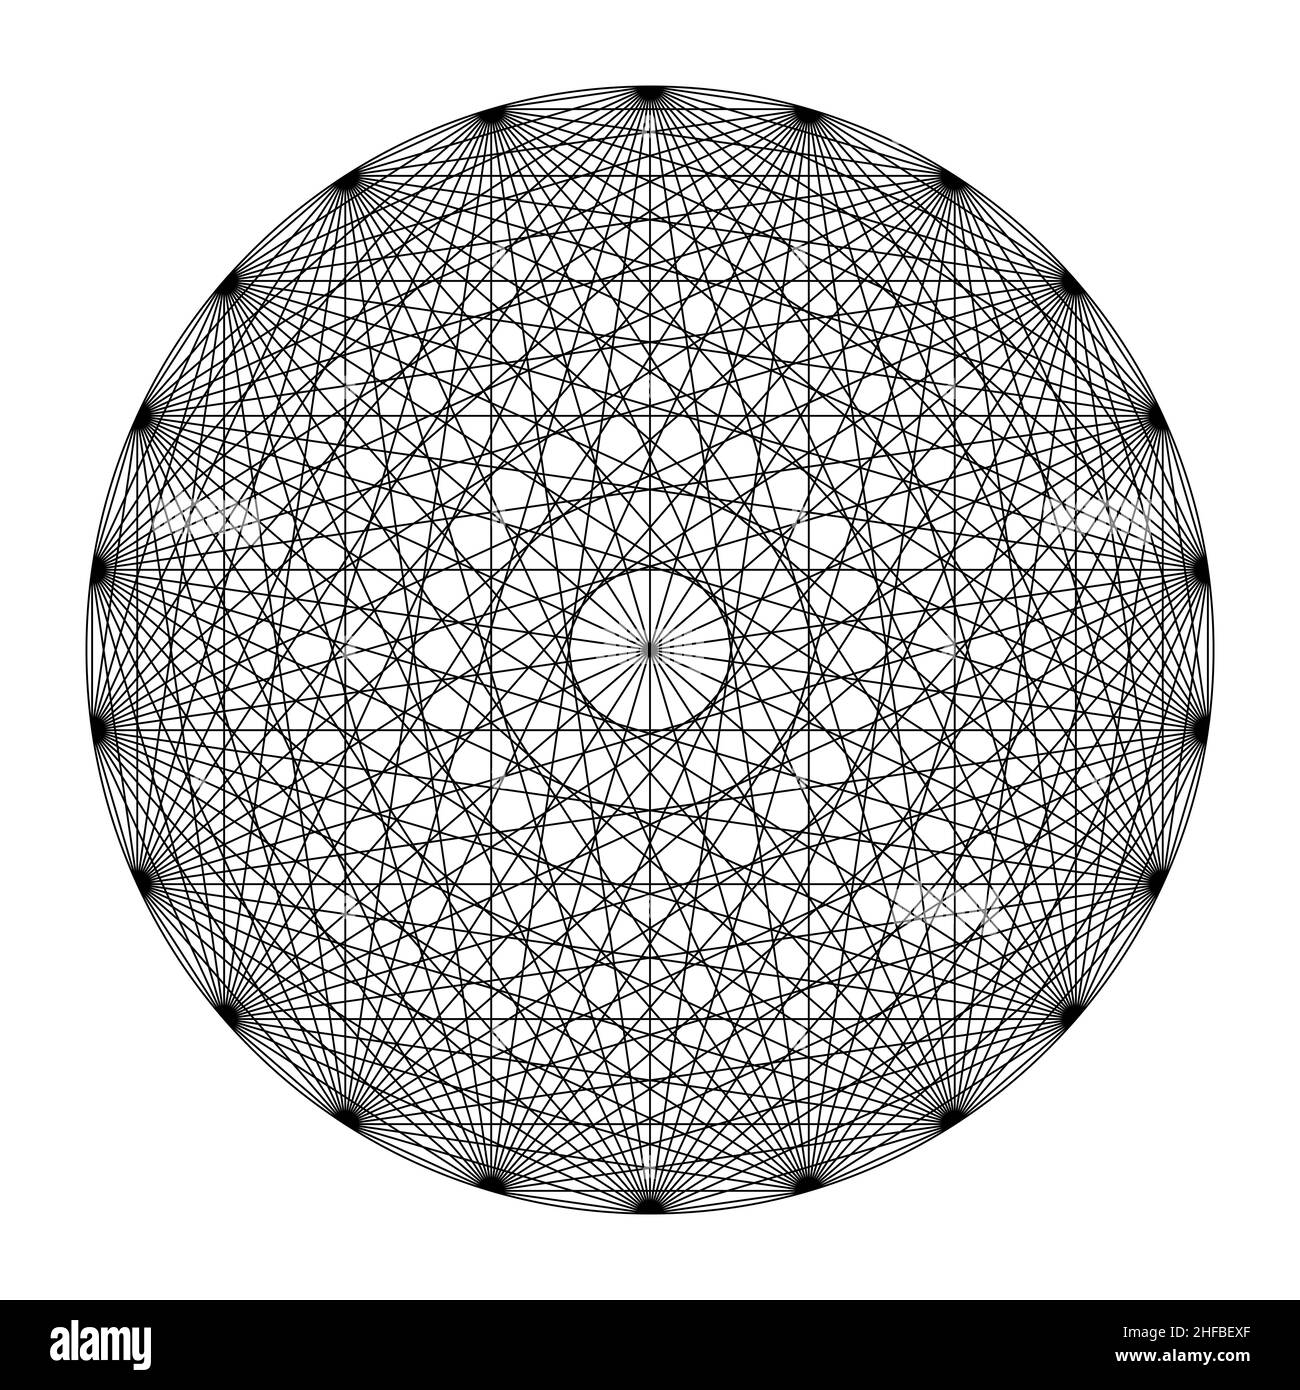 Kreis mit zweiundzwanzig Punkten, alle mit Linien verbunden, zeigt eine Mandala-ähnliche Symmetrie. Heilige Geometrie nach den 231 Türöffnungen von G. Postel. Stockfoto